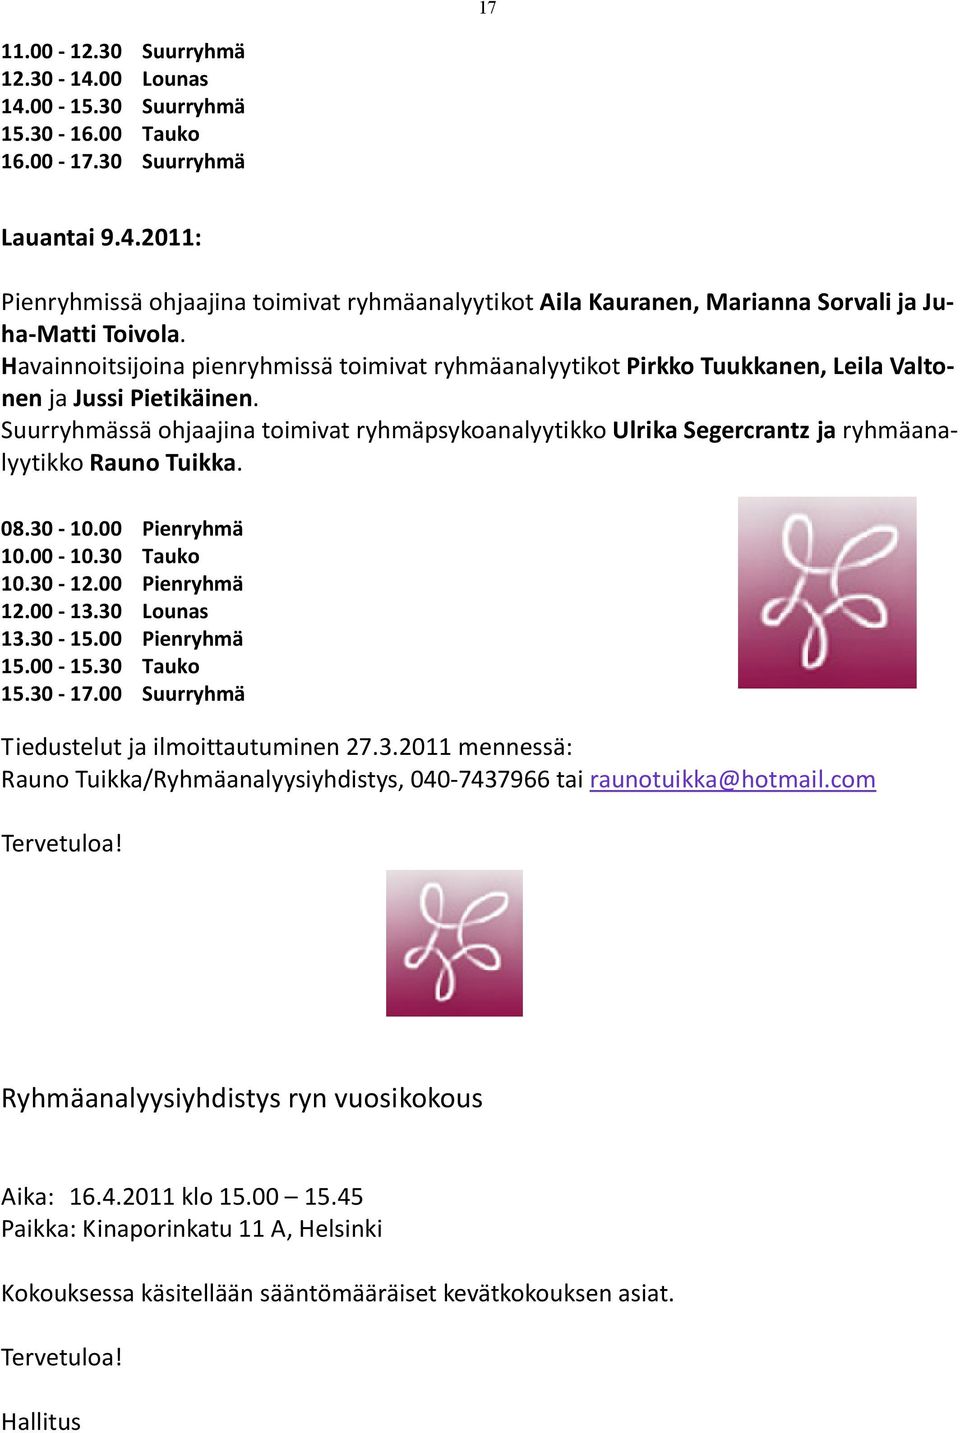 Suurryhmässä ohjaajina toimivat ryhmäpsykoanalyytikko Ulrika Segercrantz ja ryhmäanalyytikko Rauno Tuikka. 08.30-10.00 Pienryhmä 10.00-10.30 Tauko 10.30-12.00 Pienryhmä 12.00-13.30 Lounas 13.30-15.